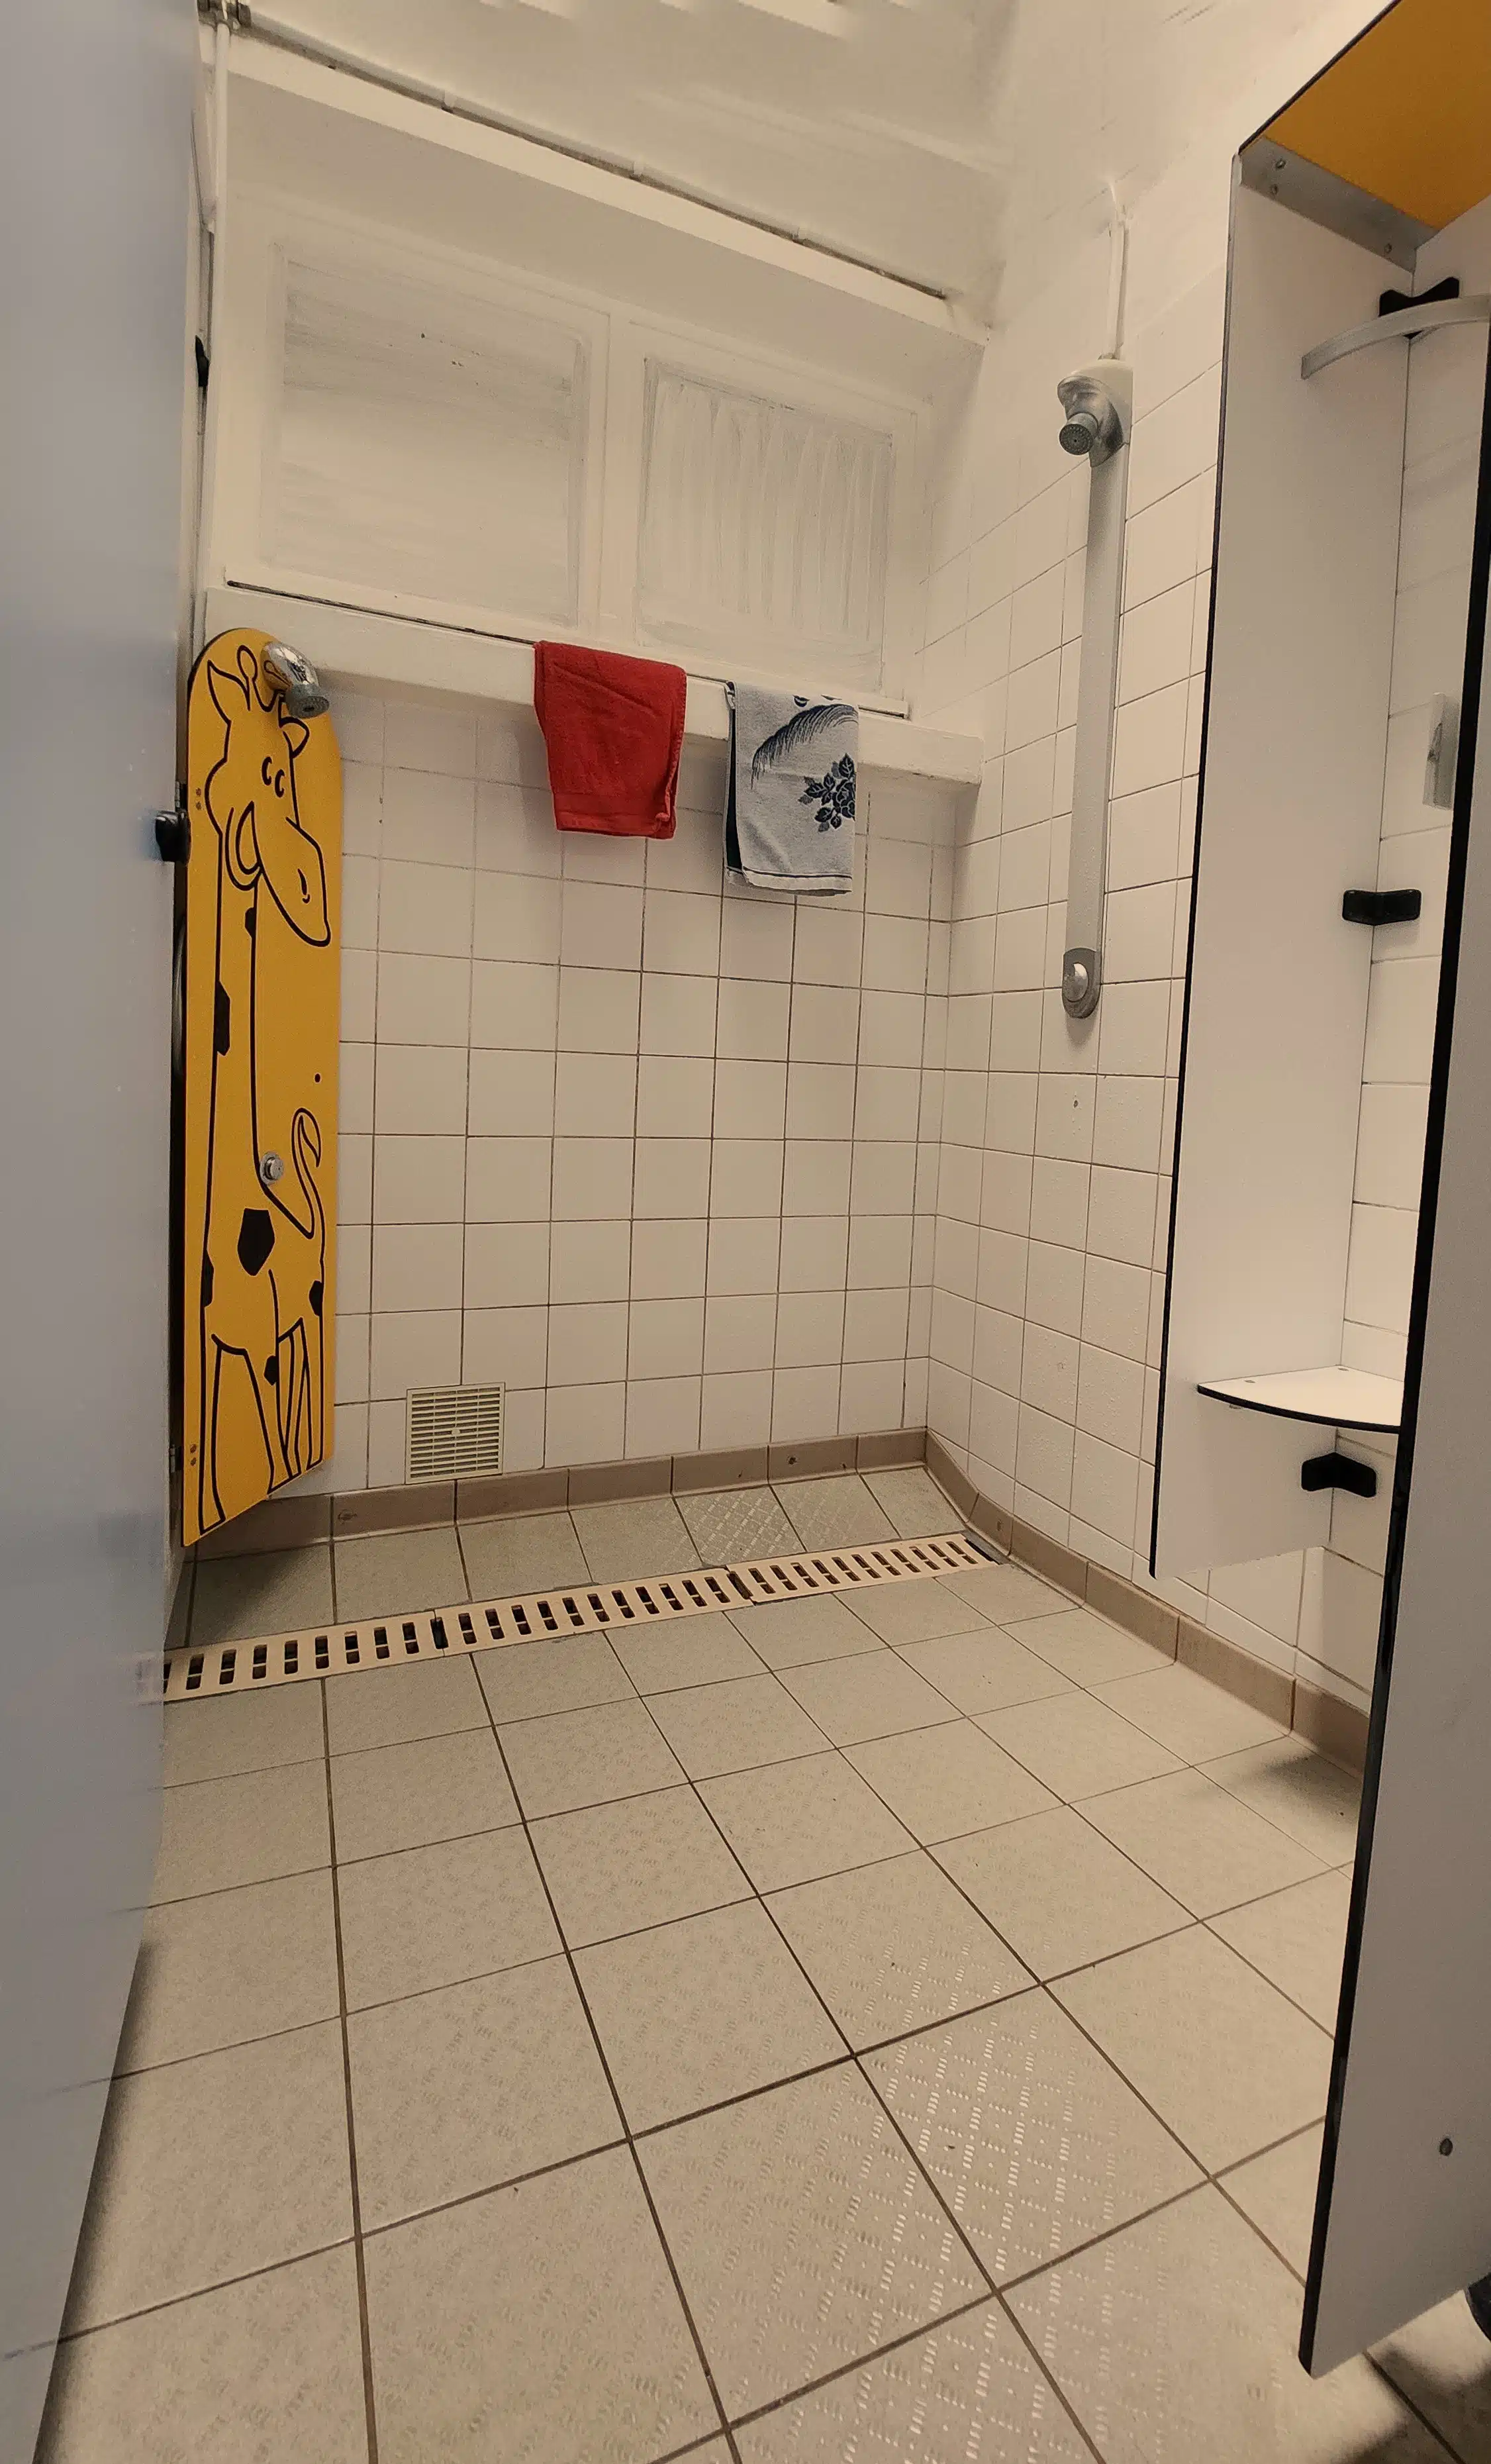 dans le bloc sanitaires : douche enfant "girafe" et douche adulte ensemble